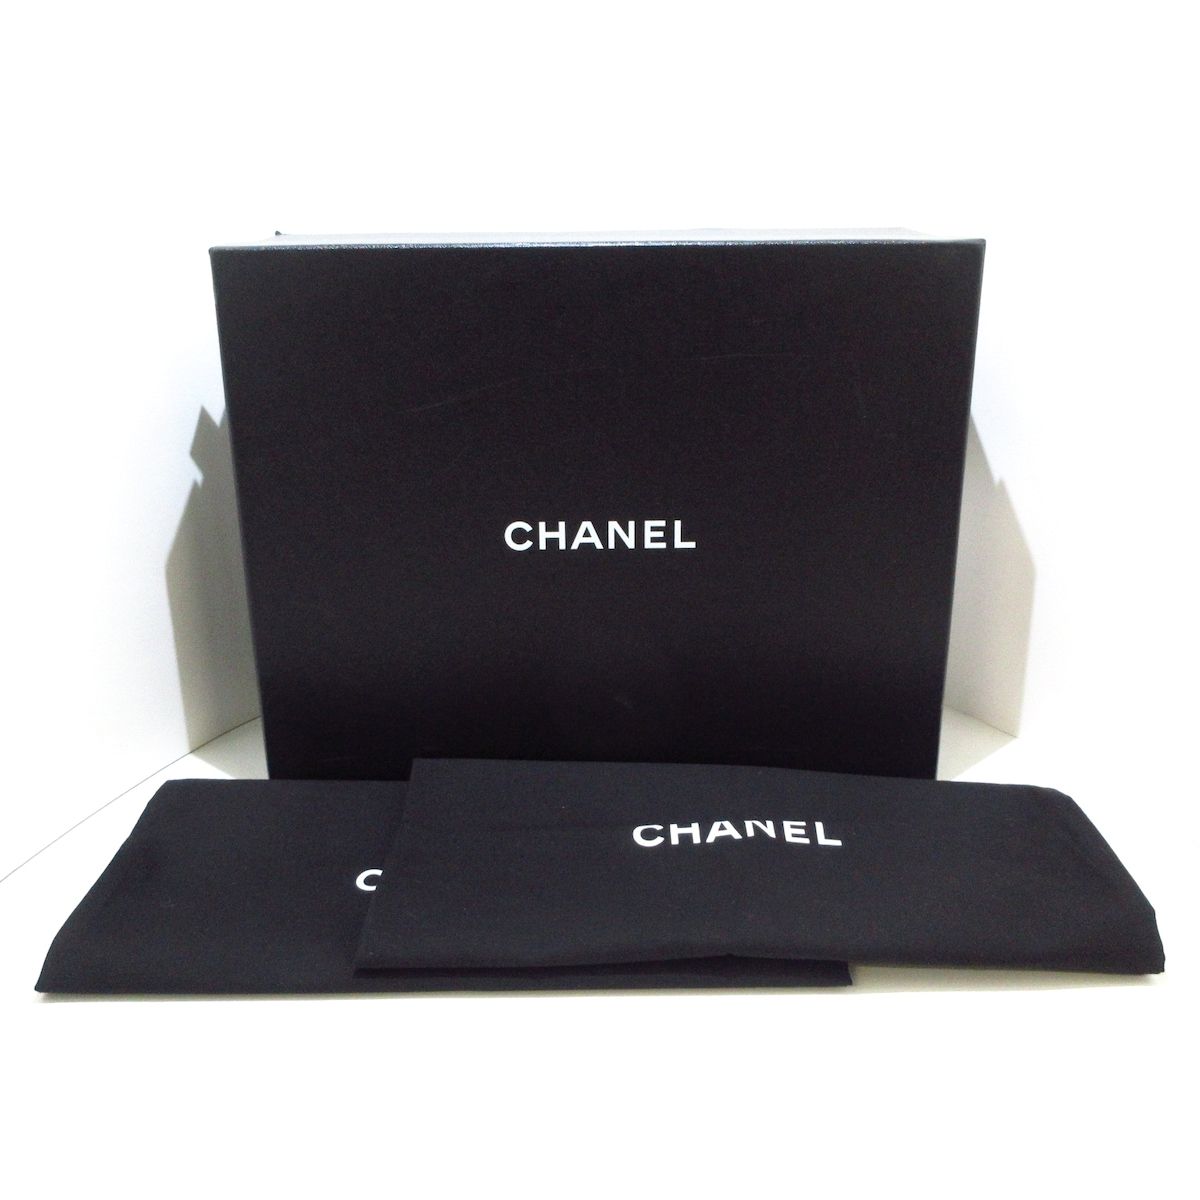 CHANEL(シャネル) ブーツ 38 1/2 C美品 - G39170 黒×ゴールド ココマーク/チェーン レザー×金属素材